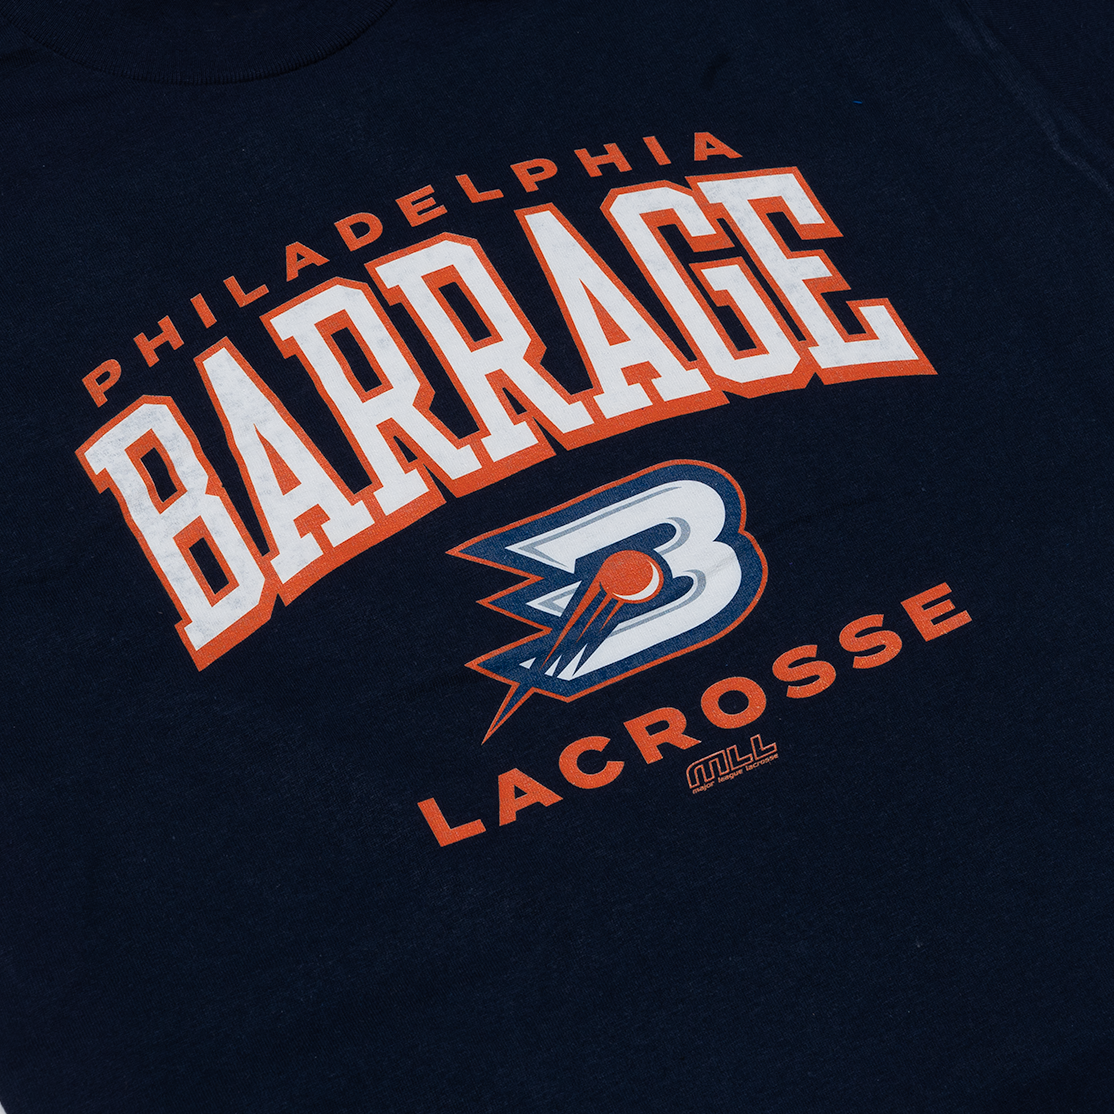 Philadelphia Barrage Lacrosse Tee